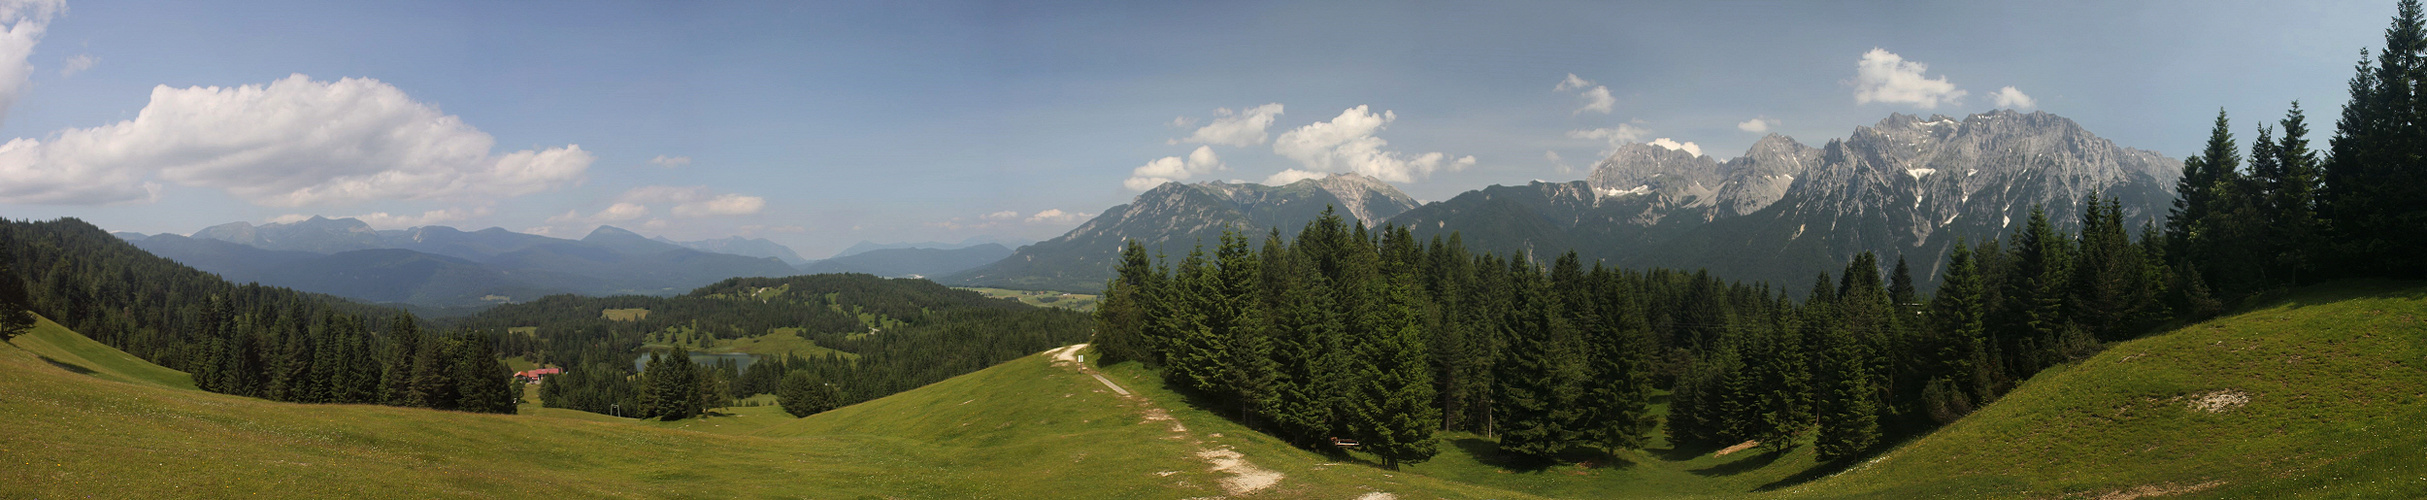 12.07.2013 - Aussicht auf Karwendel, Wettersteingebirge